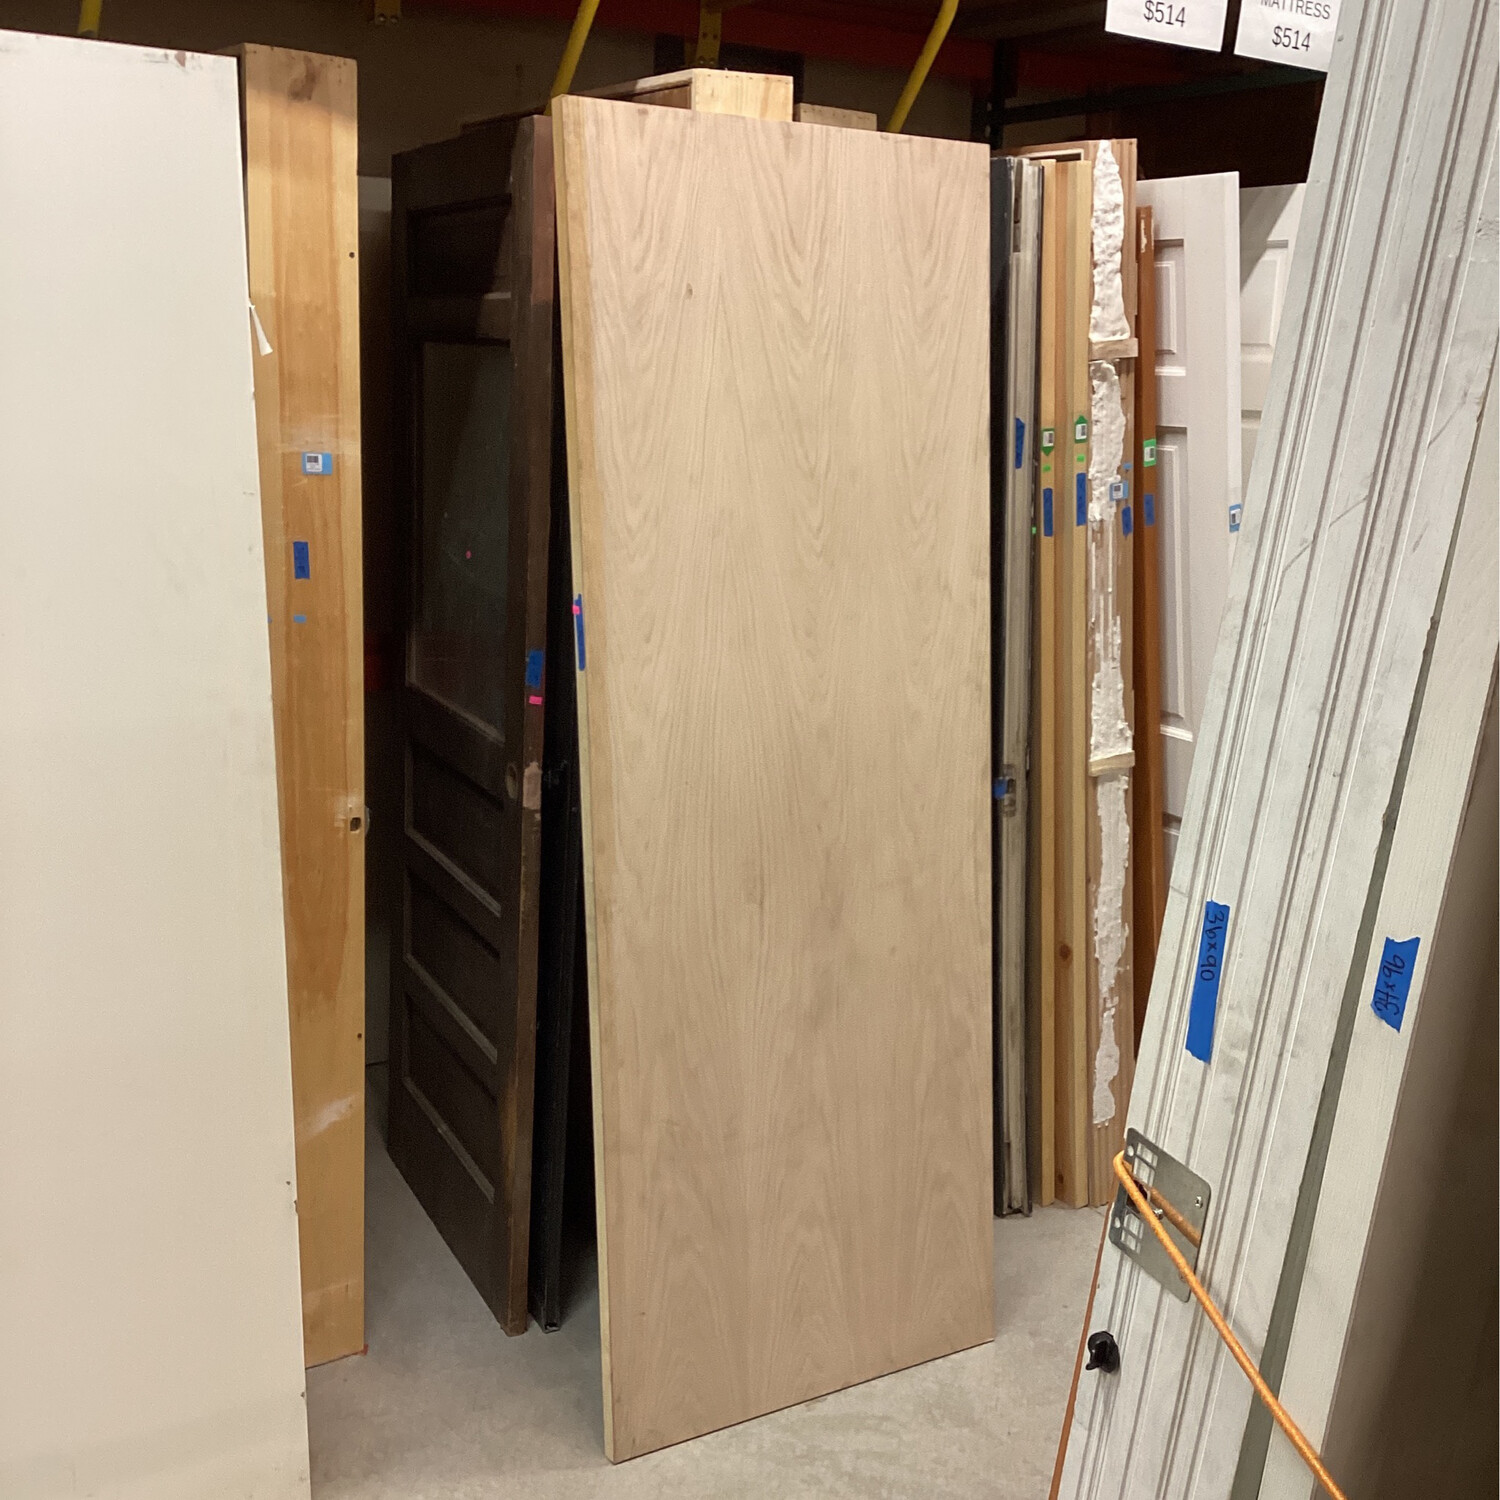 30”x80” Flat Panel Door